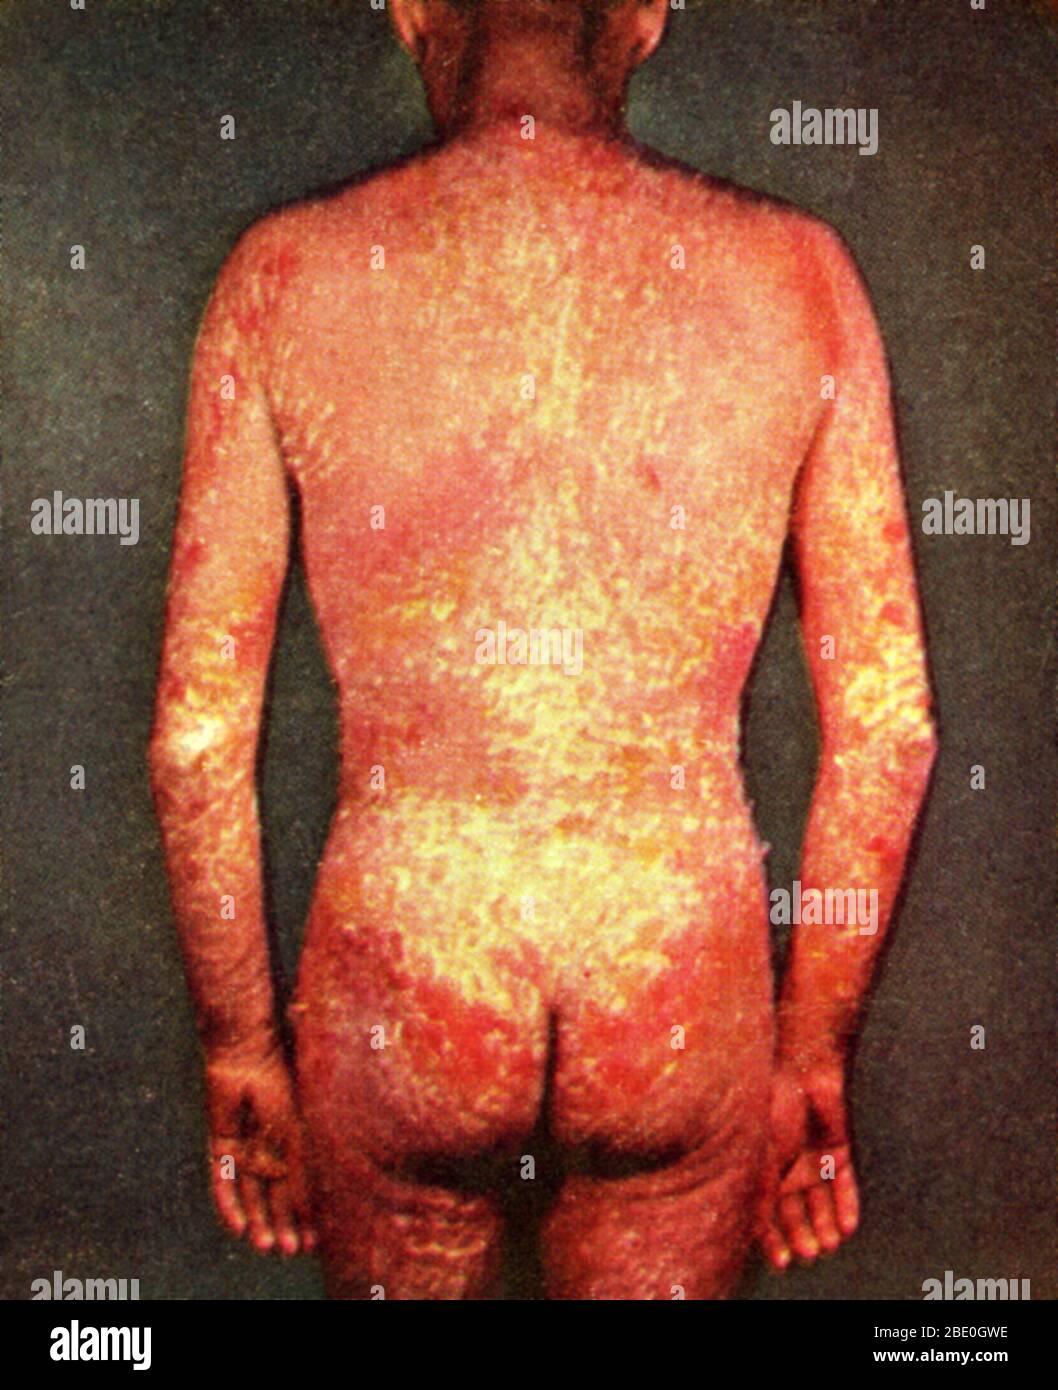 Eritroderma (noto anche come dermatite esfoliativa, dermatite esfoliativa e sindrome dell'uomo rosso), una malattia infiammatoria della pelle, caratterizzata da scalfore che interessa tutto il corpo. Foto Stock